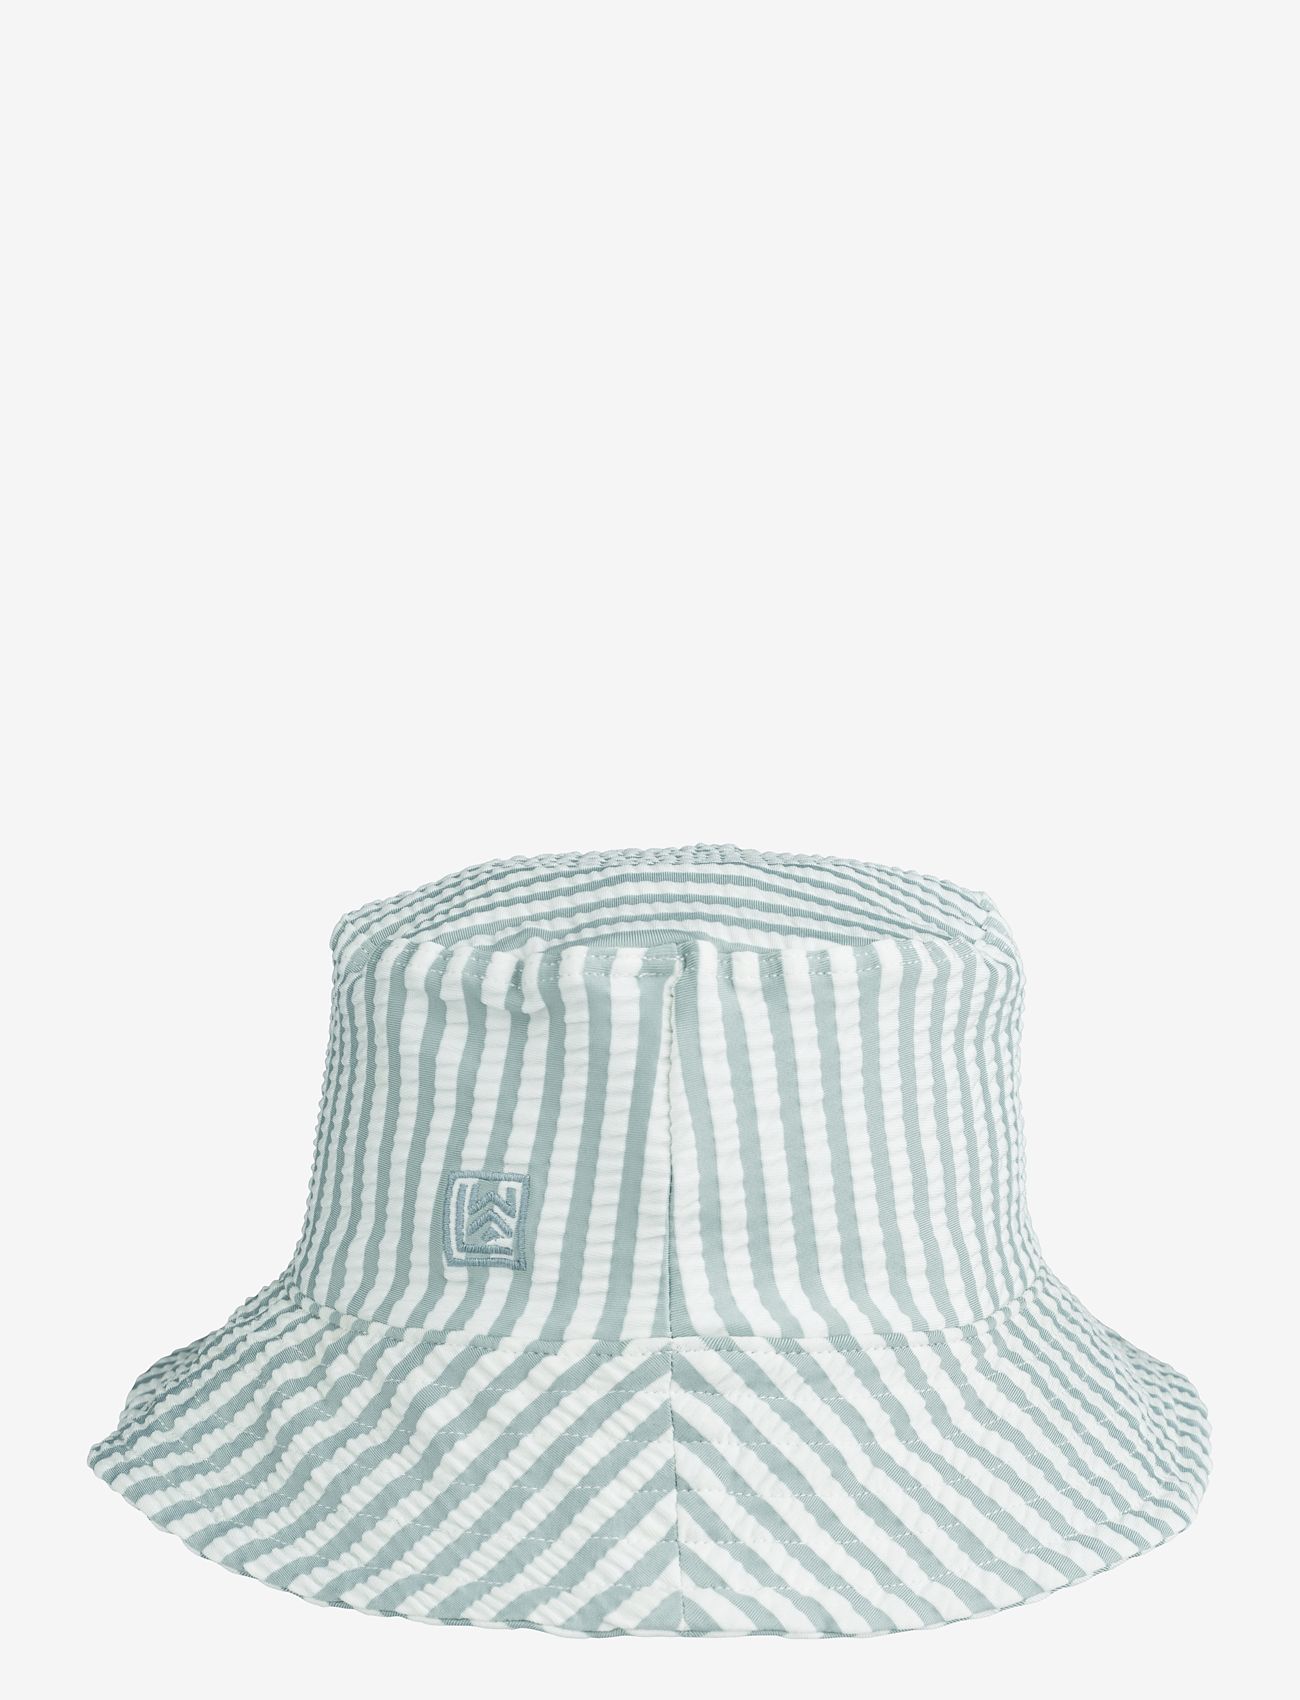 Liewood - Matty seersucker sun hat - skrybėlės - y/d stripe: sea blue/white - 0